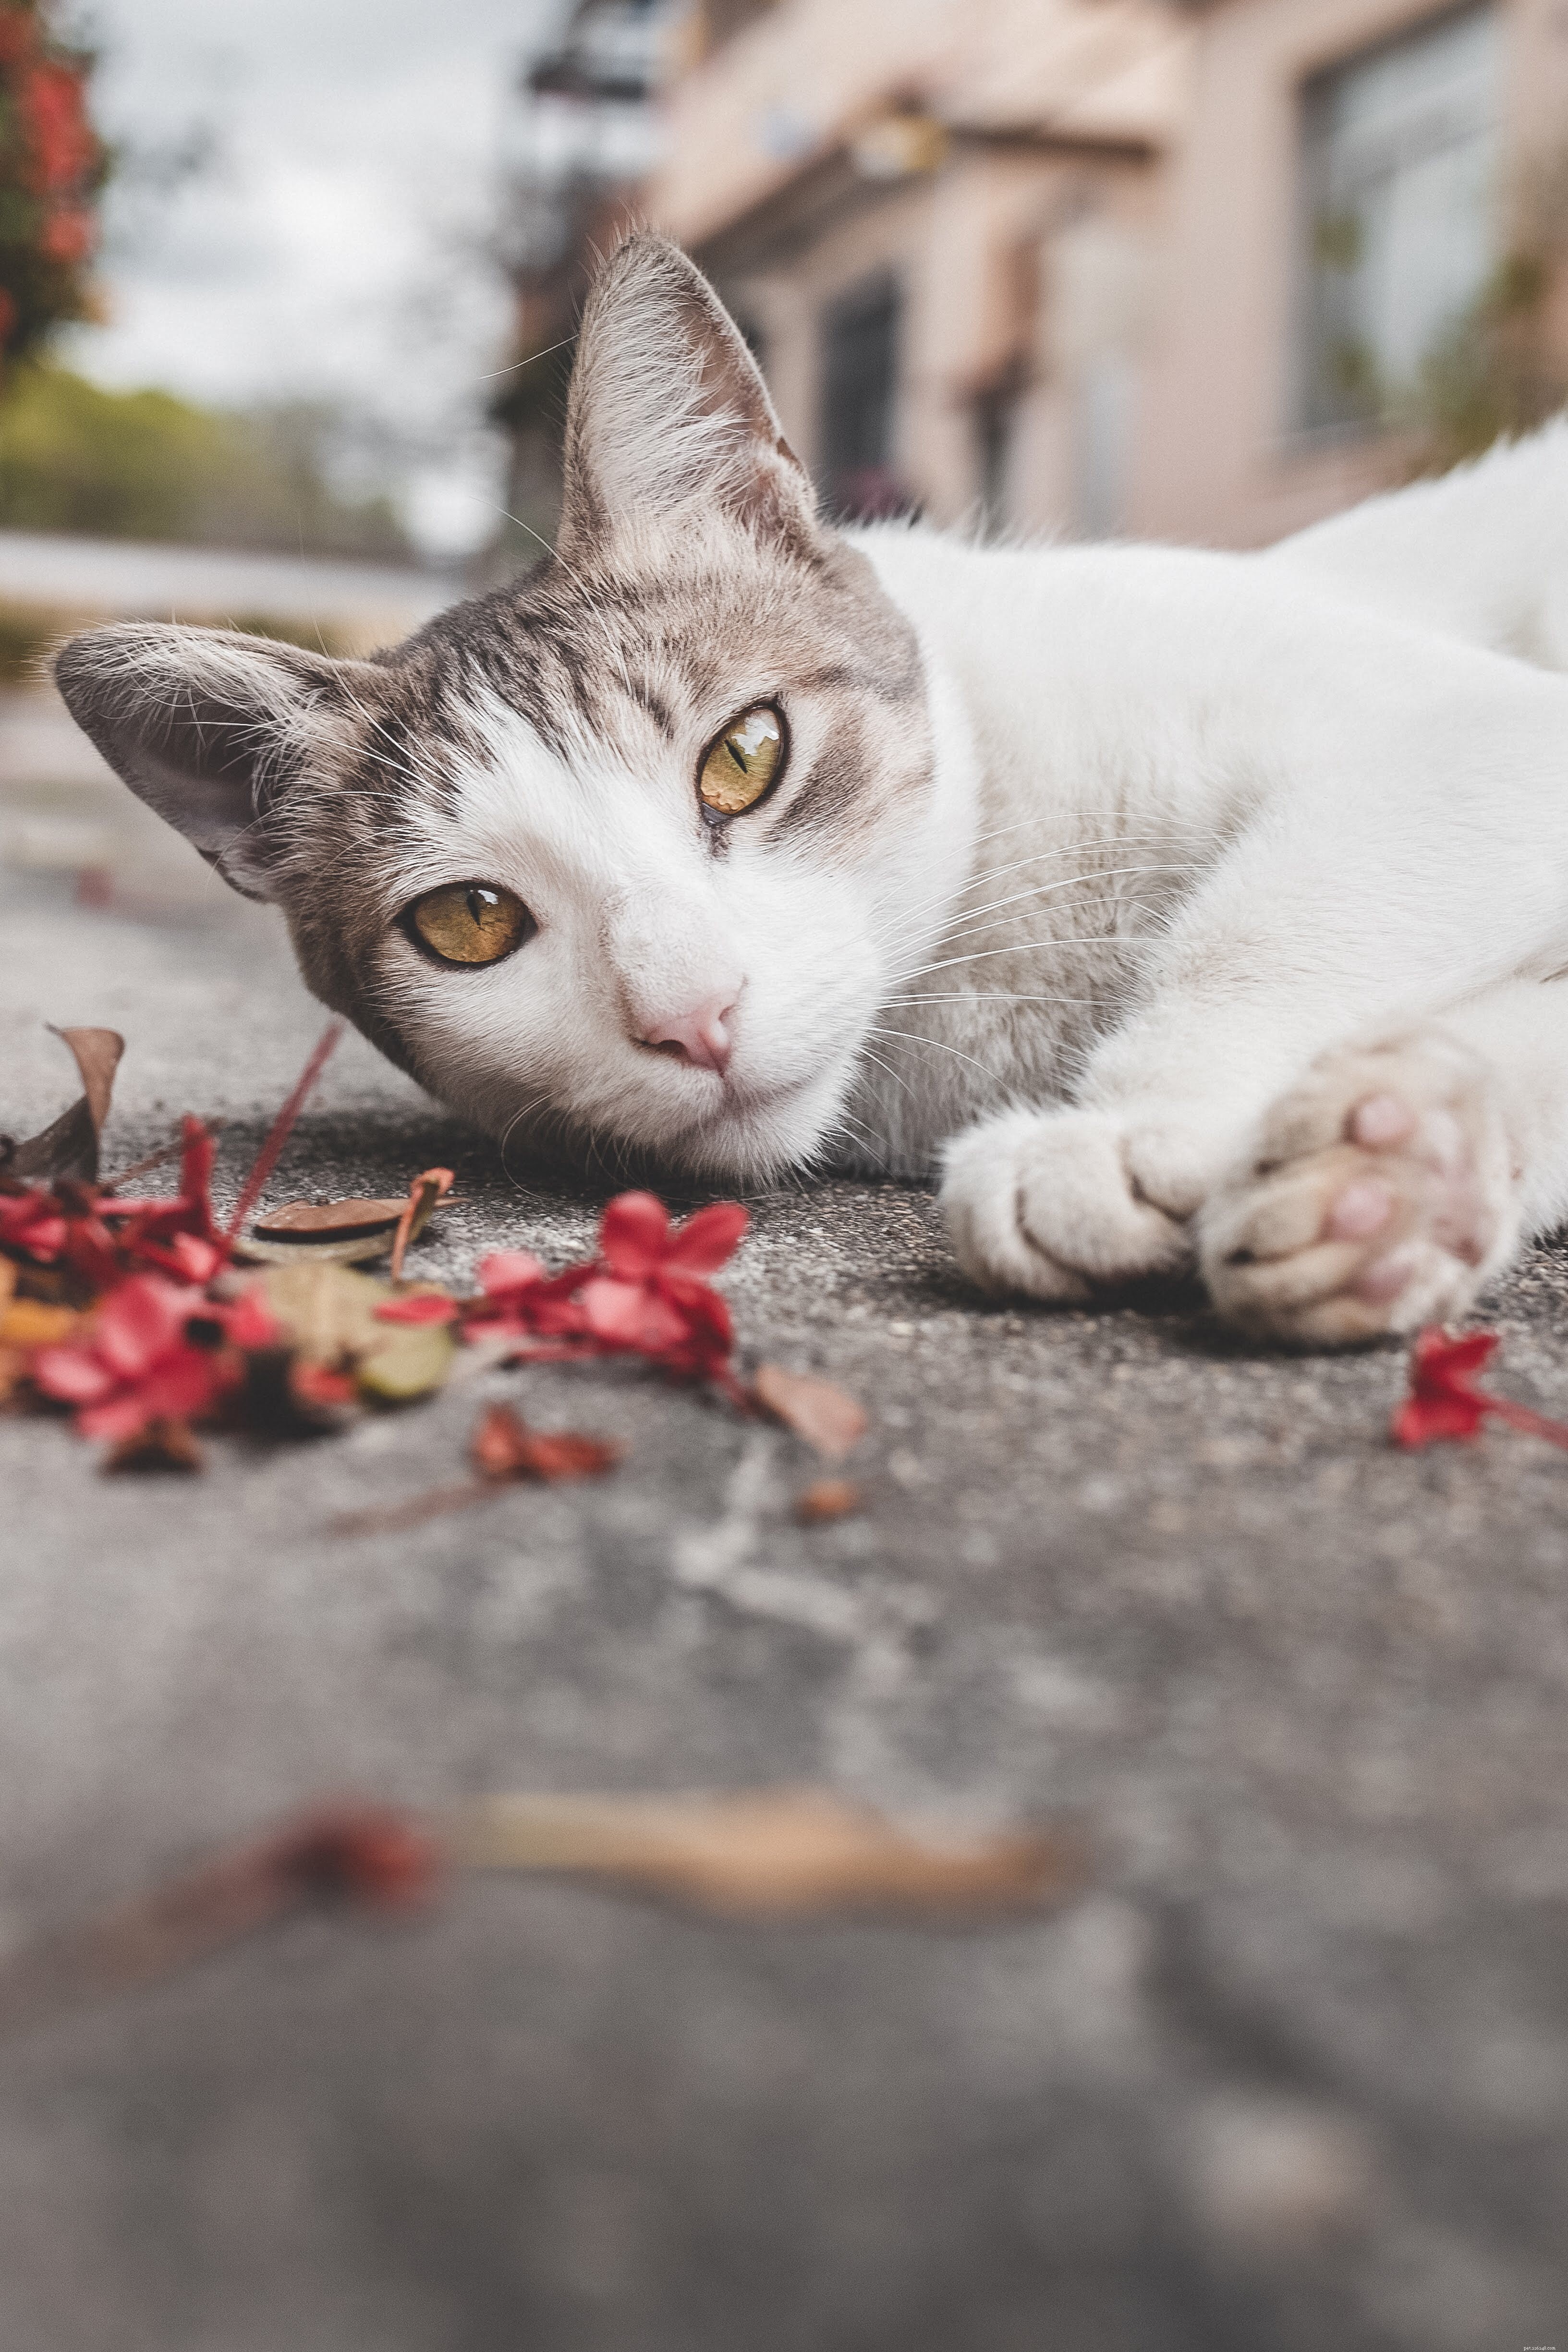 Felinotherapie – behandeling voor katten